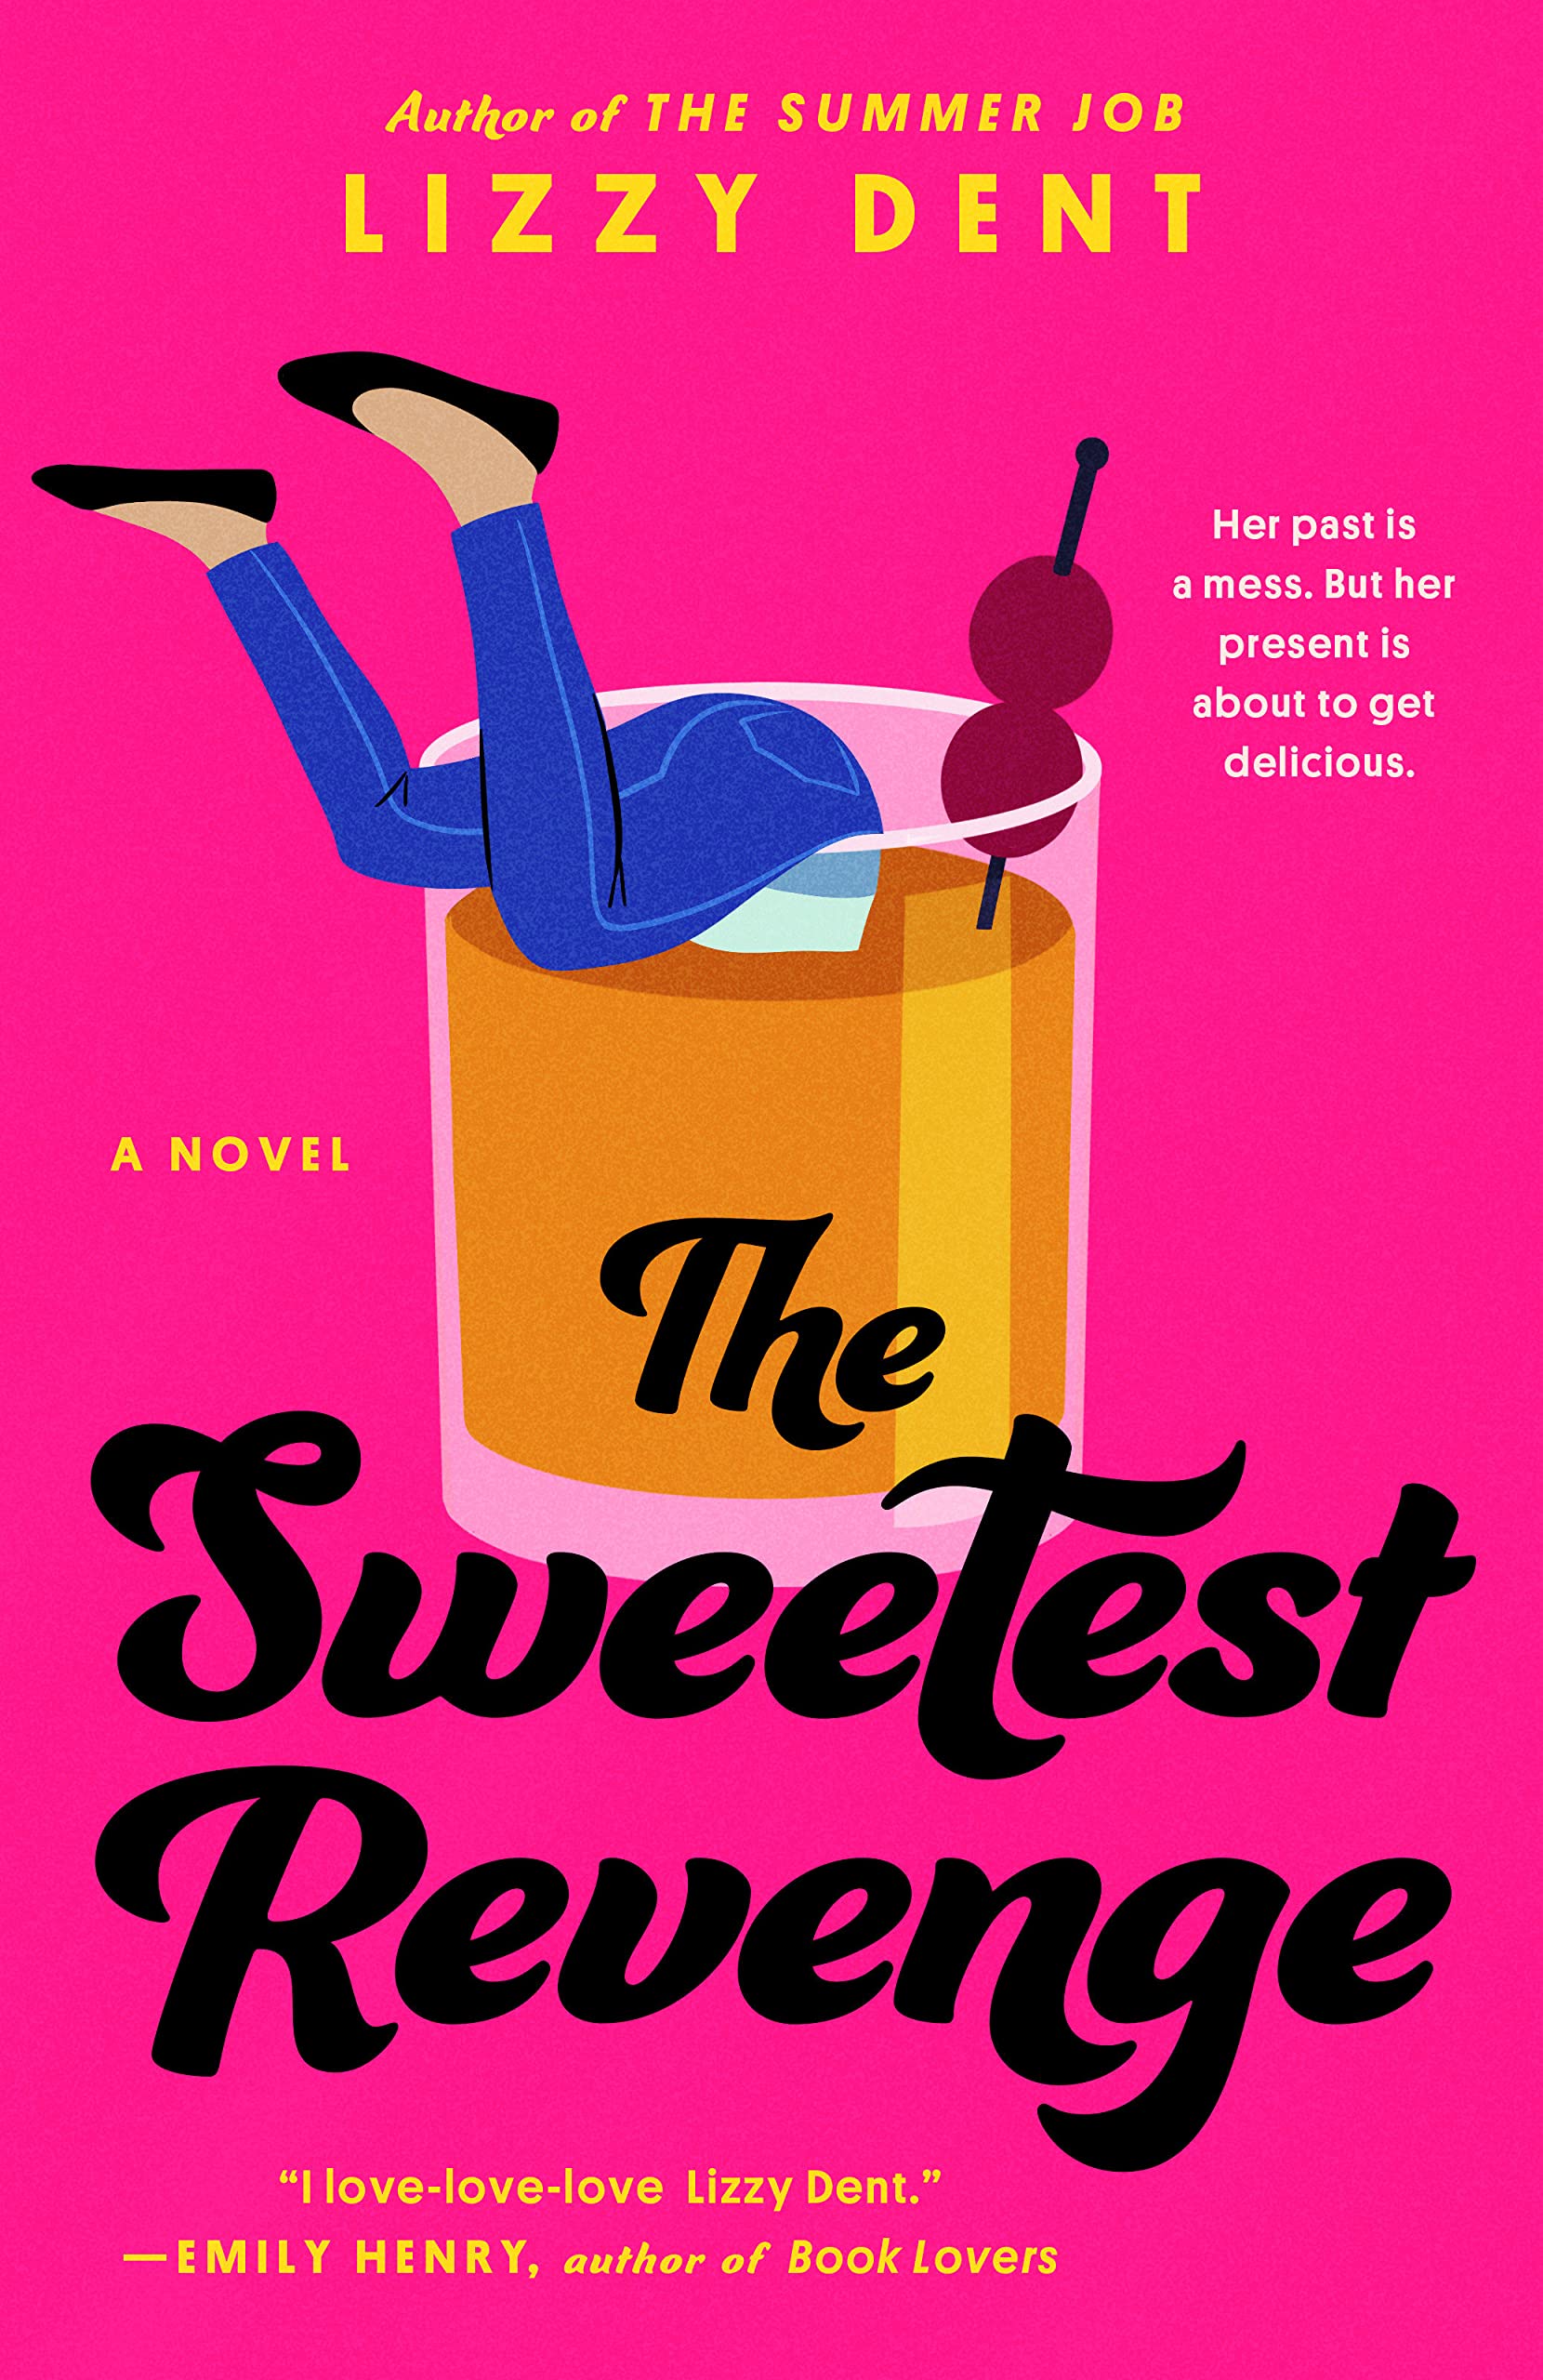 Image for "The Sweetest Revenge"